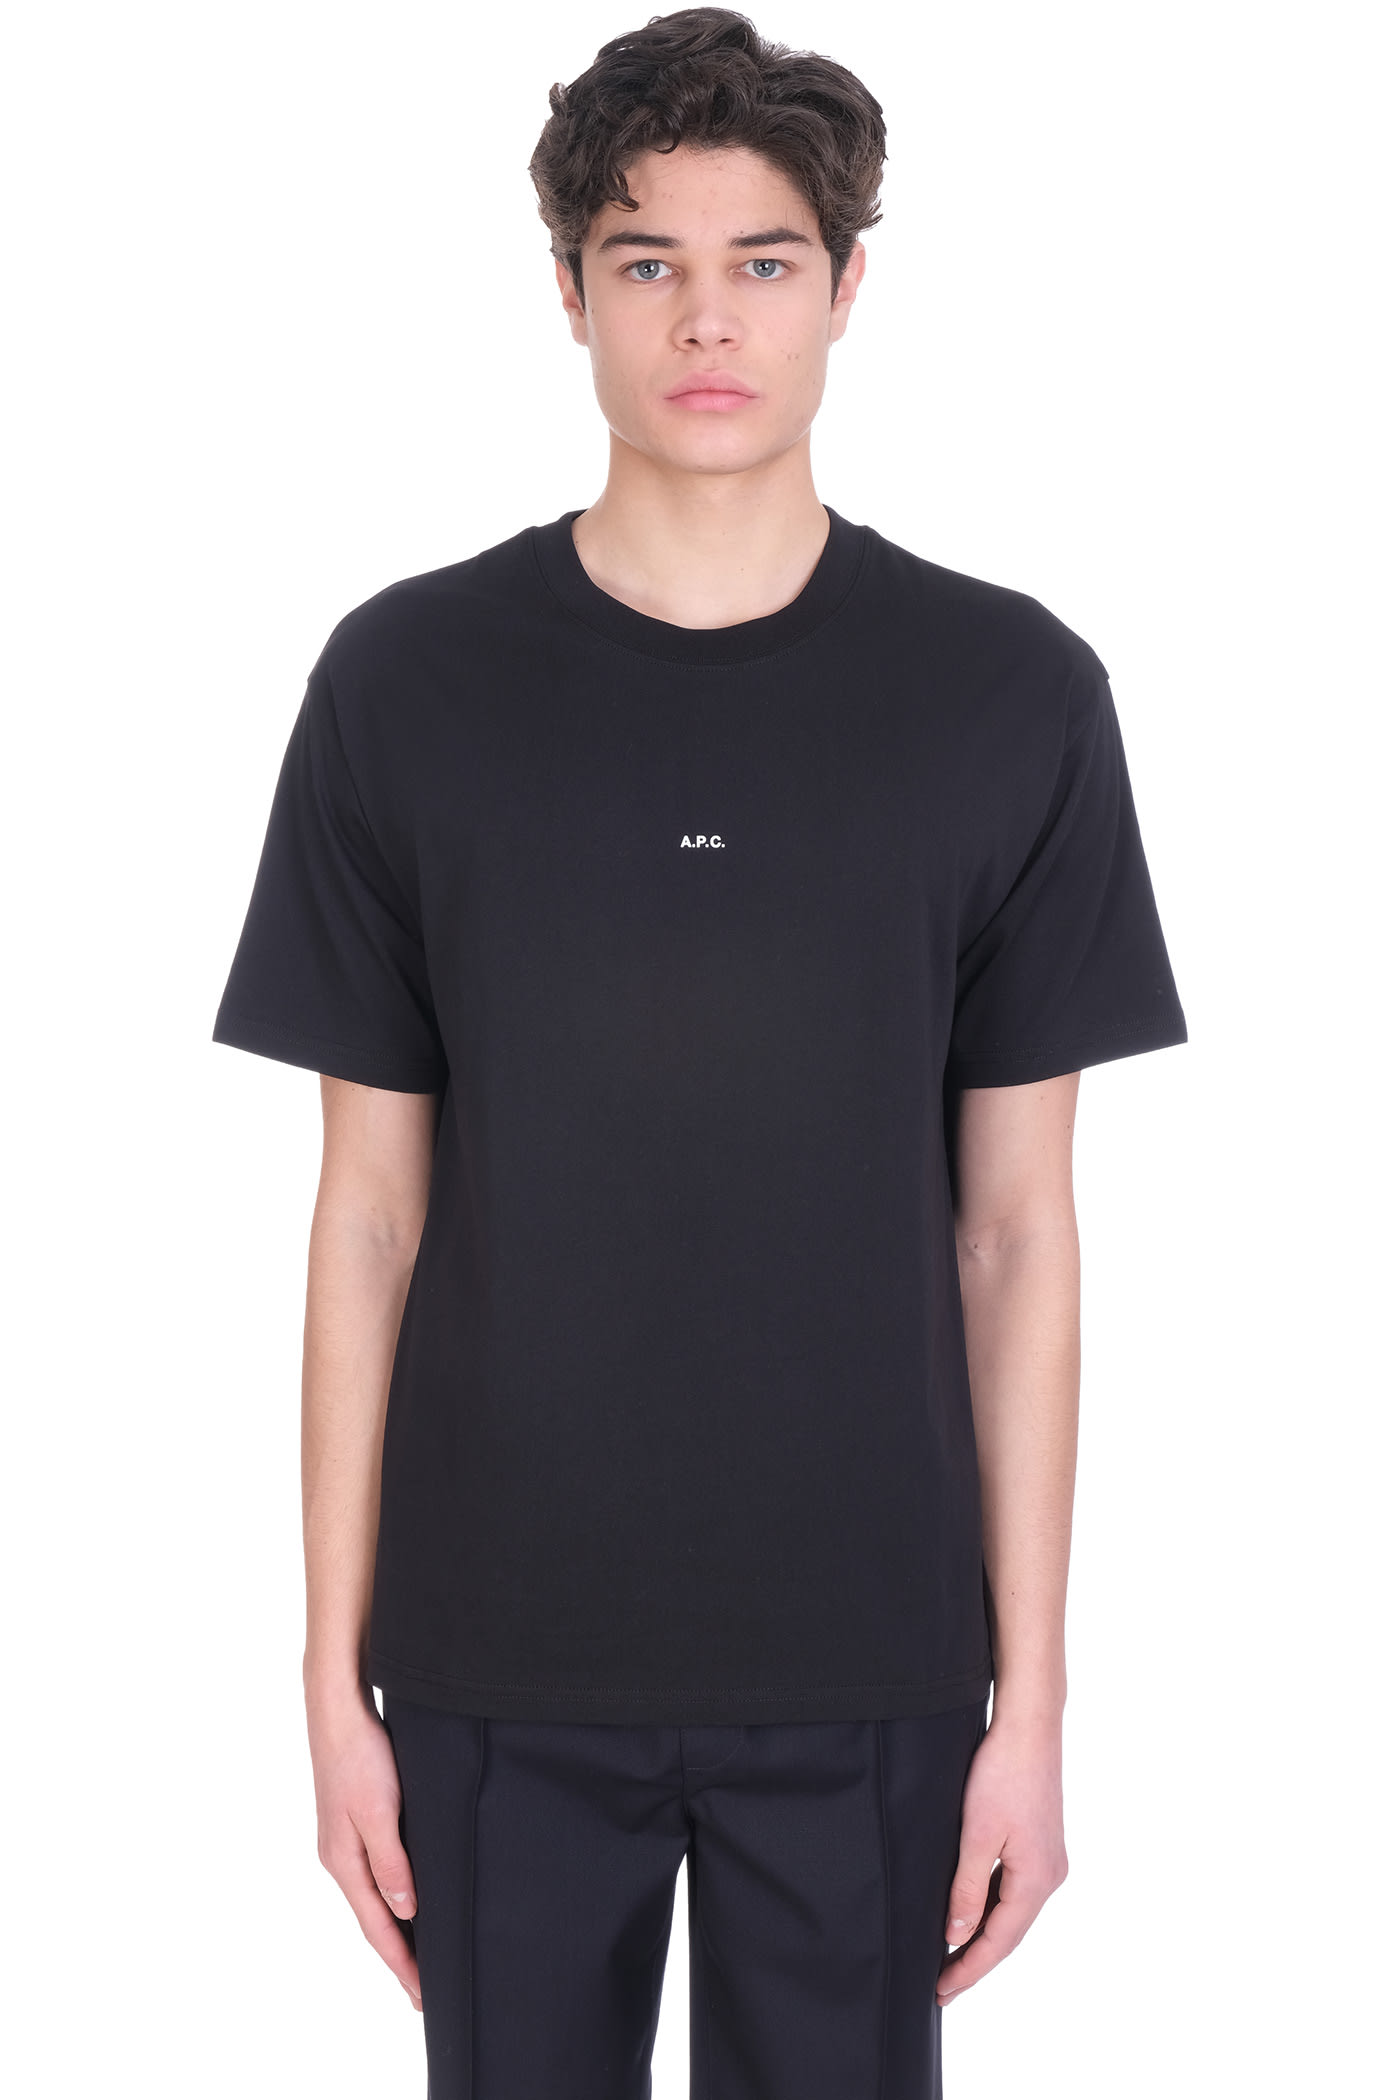 A.P.C. Kyle T-shirt In Black Cotton